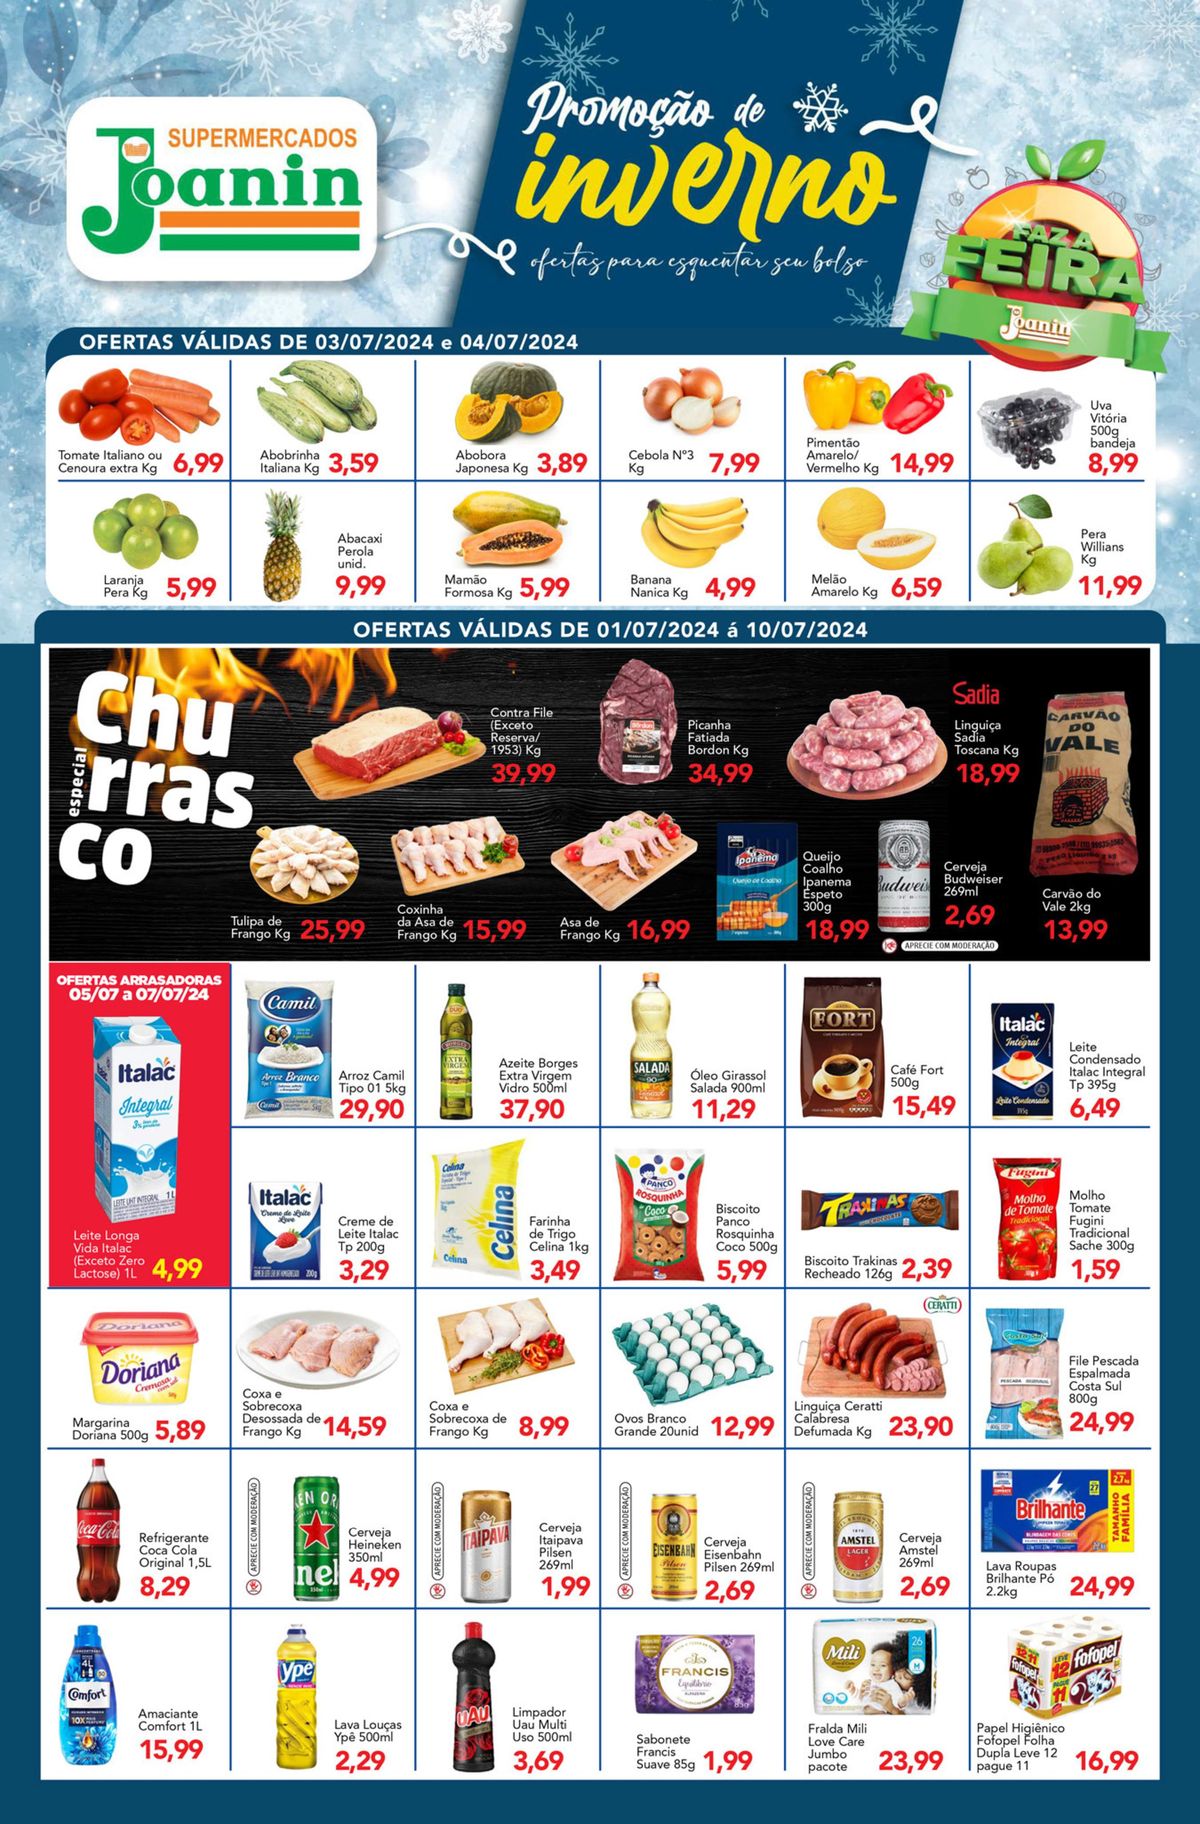 Ofertas Supermercados Joanin: frutas, verduras, carnes e bebidas em promoção